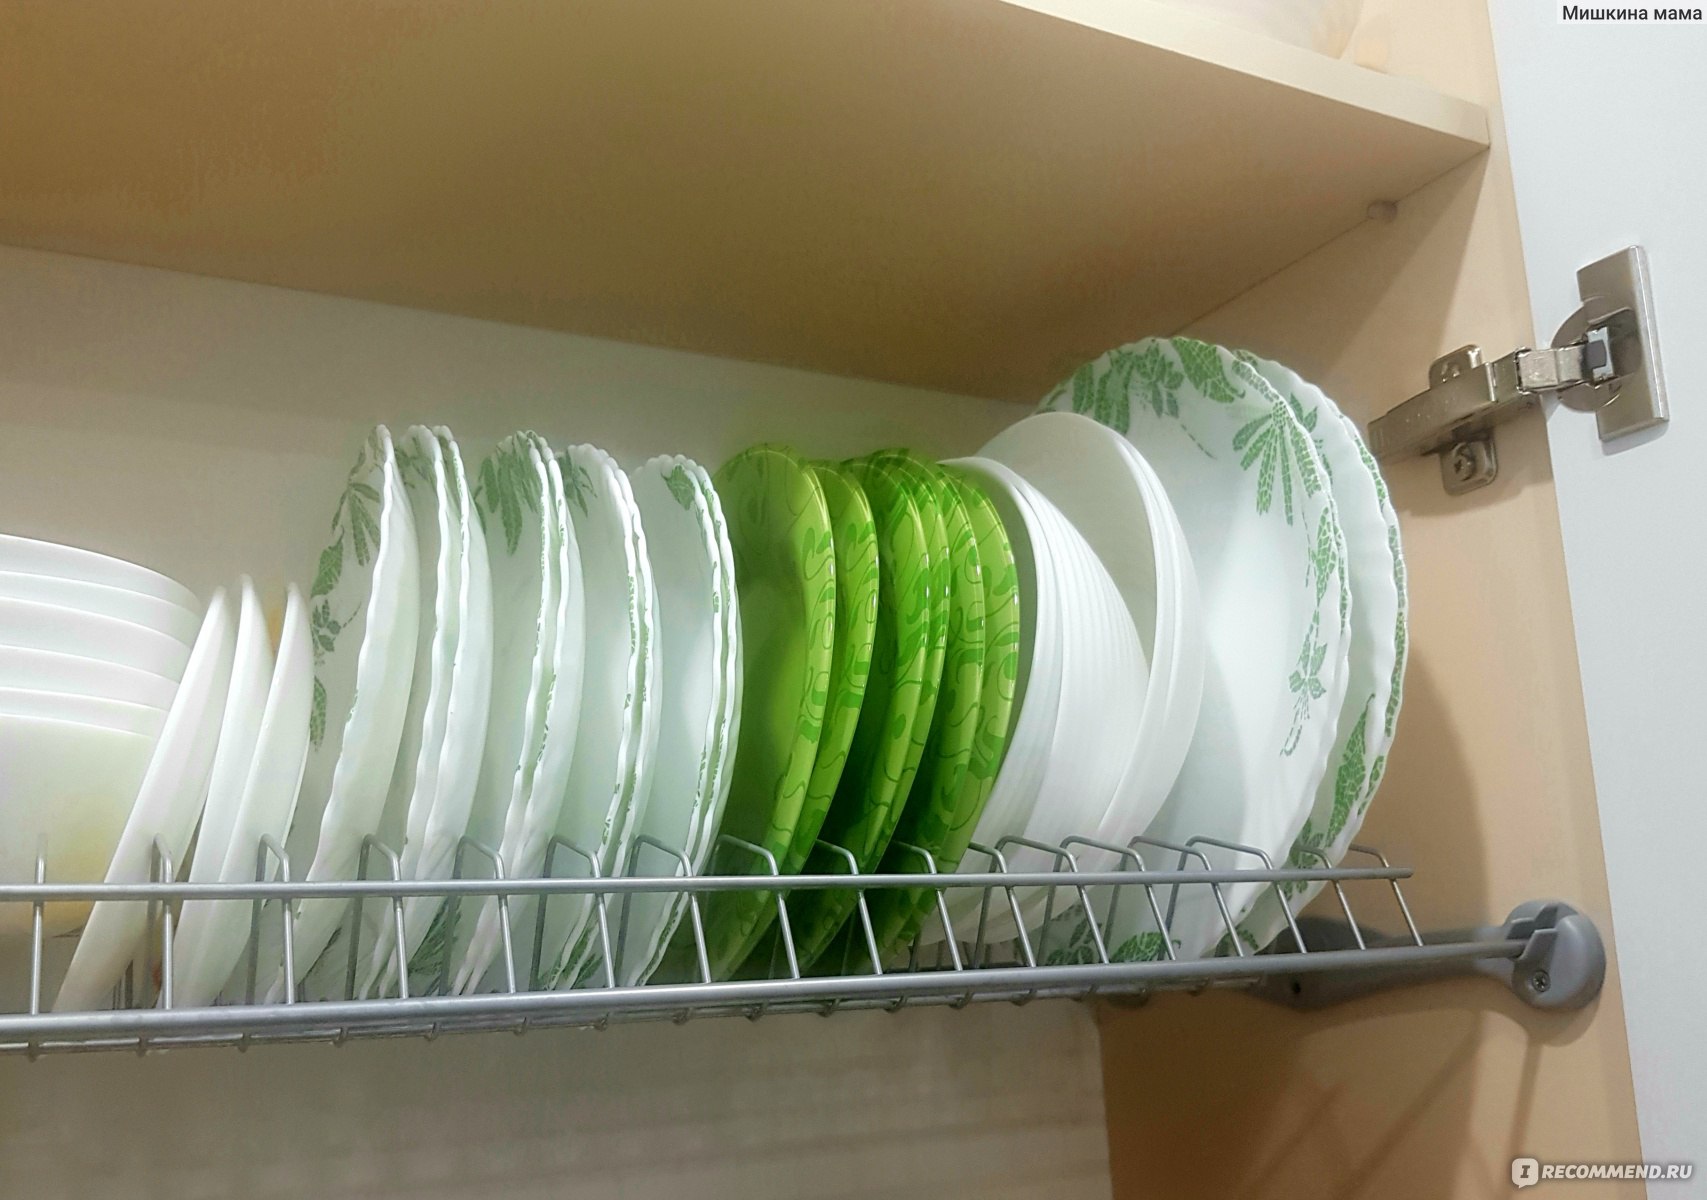 Сушка для посуды в шкаф италия